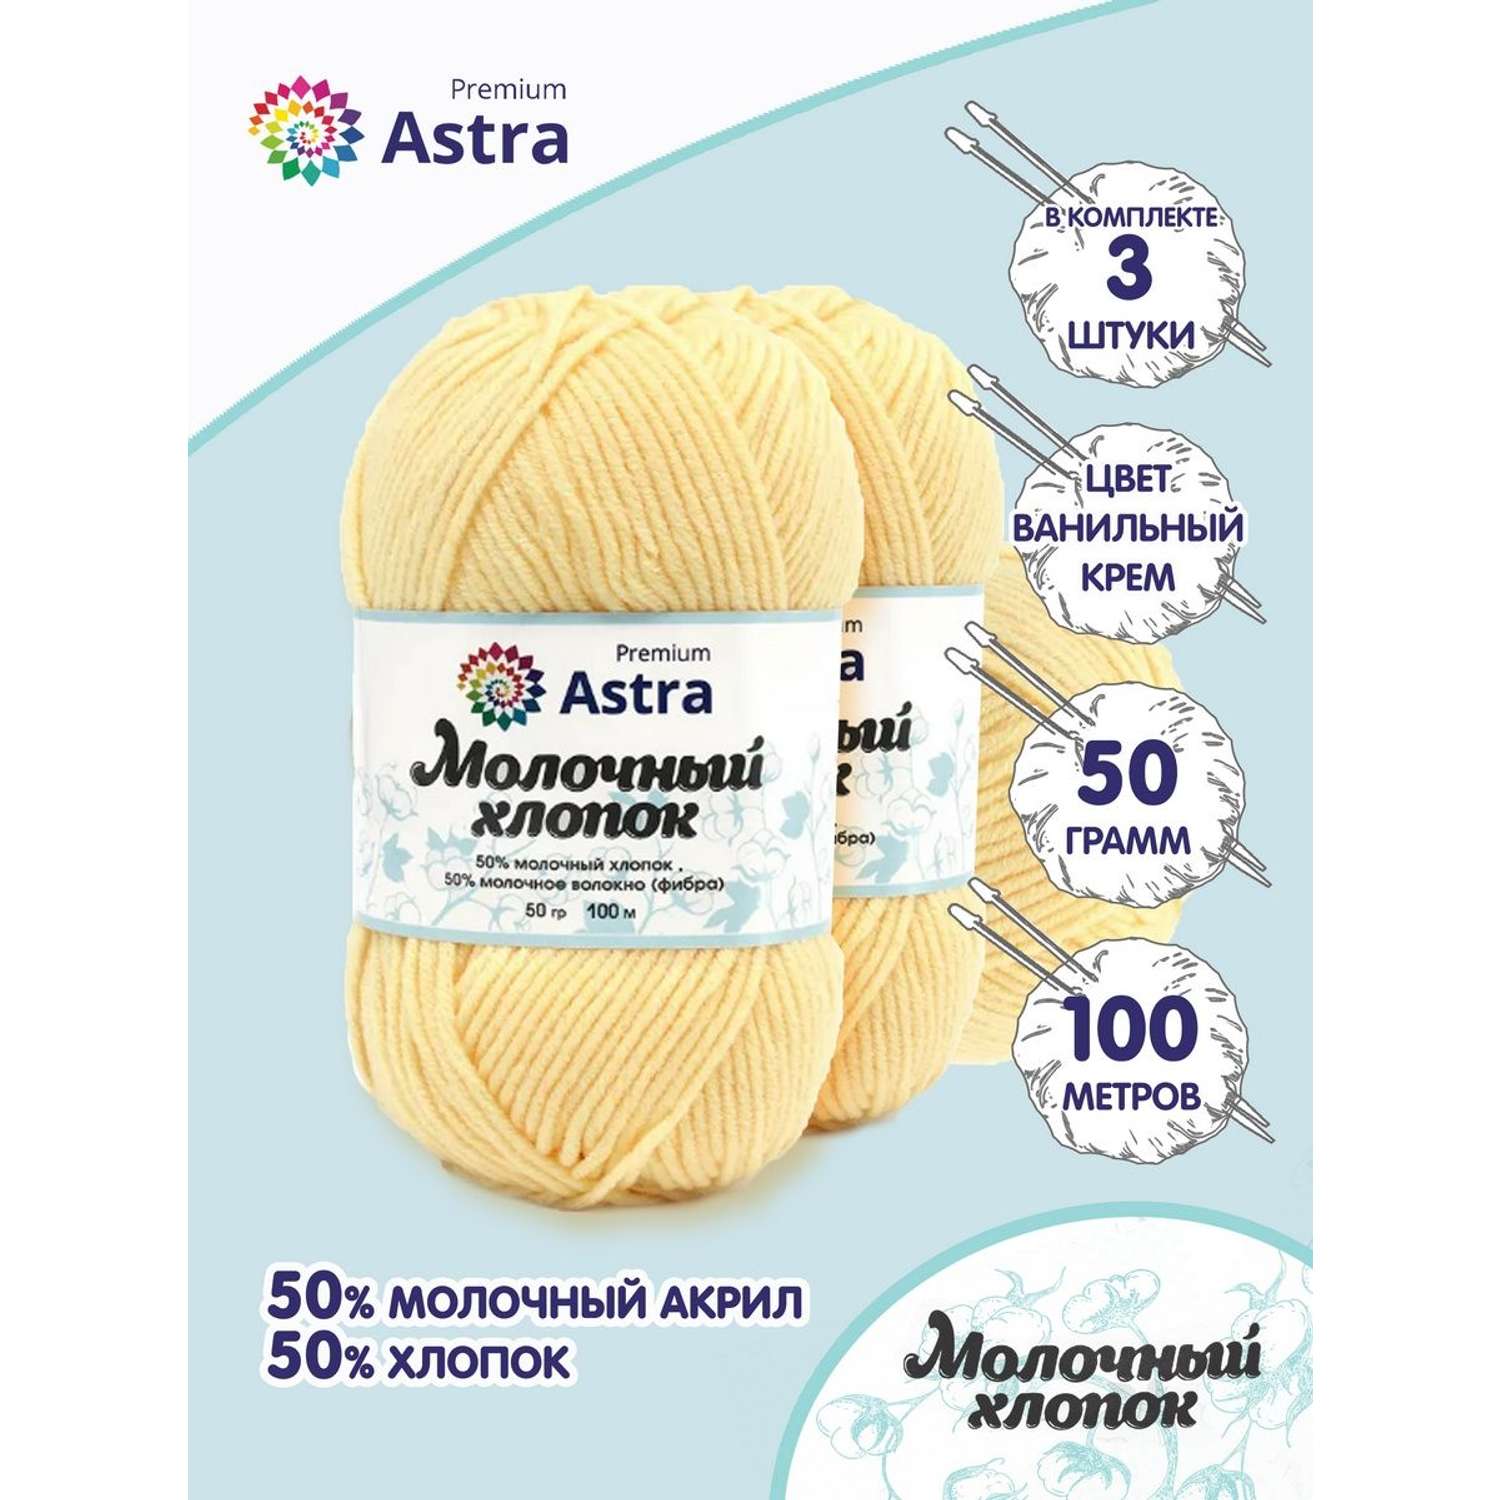 Пряжа для вязания Astra Premium milk cotton хлопок акрил 50 гр 100 м 23 ванильный крем 3 мотка - фото 1